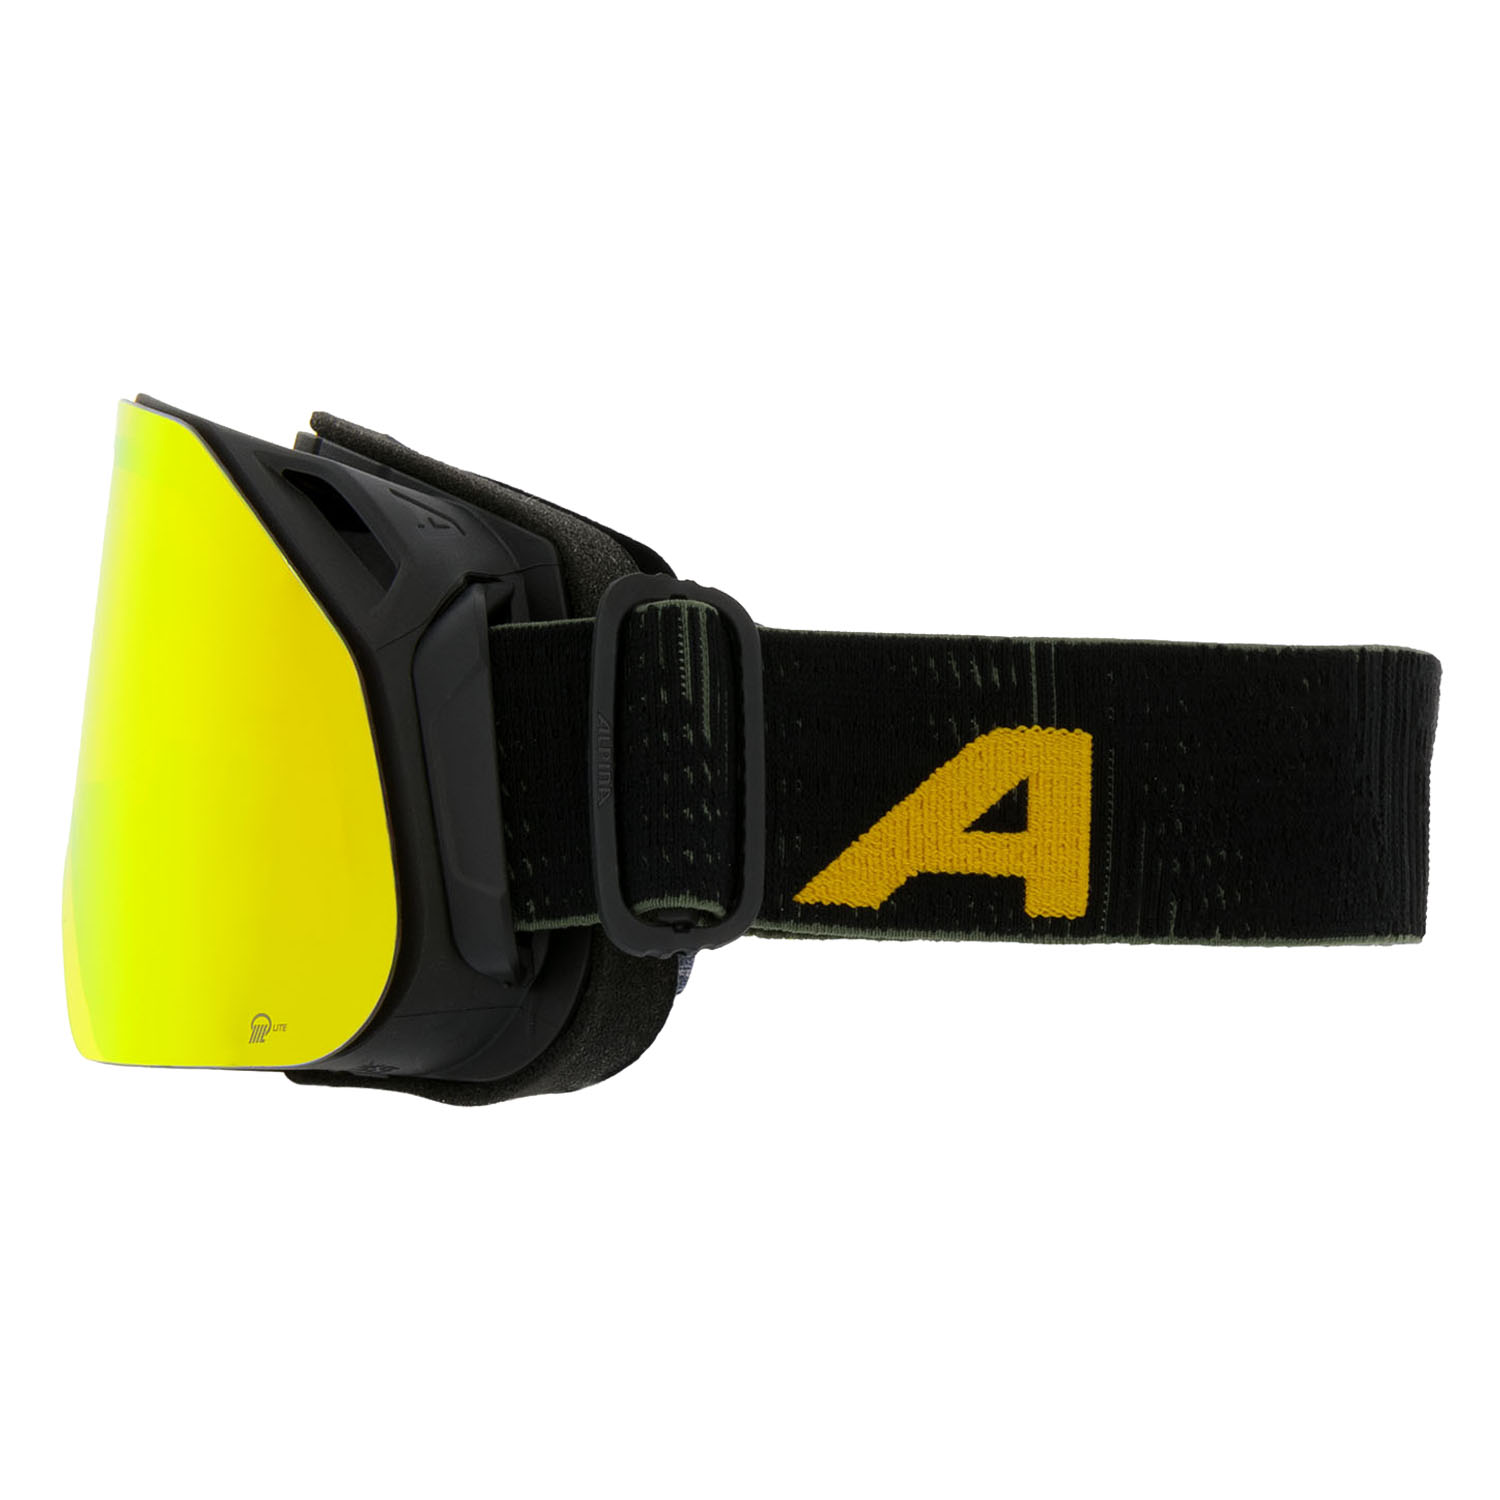 Очки горнолыжные ALPINA Blackcomb Q-Lite Black-Yellow Matt/Q-Lite Orange S2